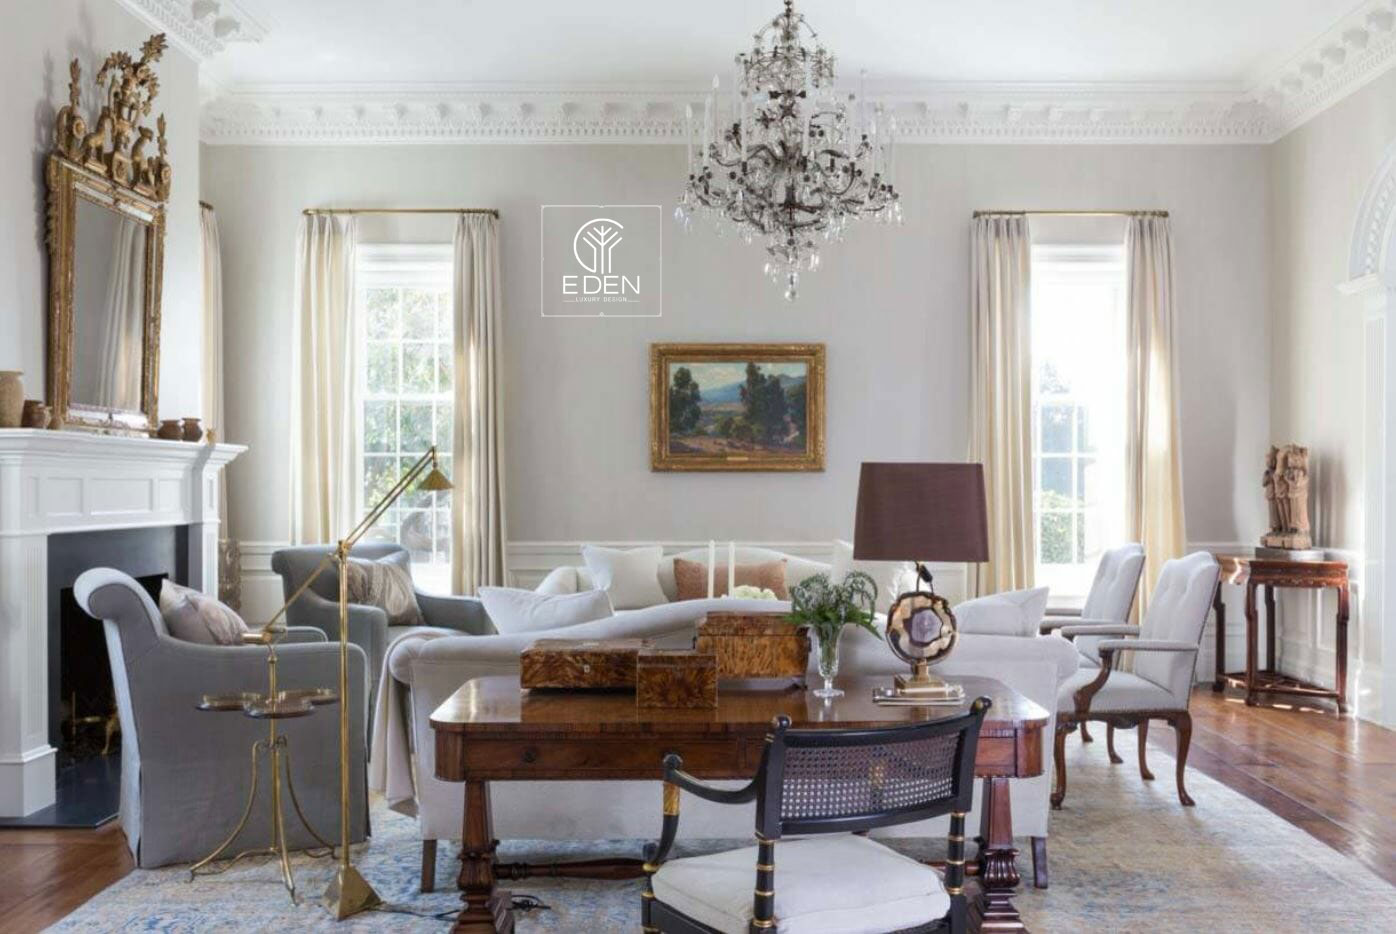 Bộ bàn ghế lớn chính là điểm nhấn của thiết kế phòng khách theo phong cách cổ điển